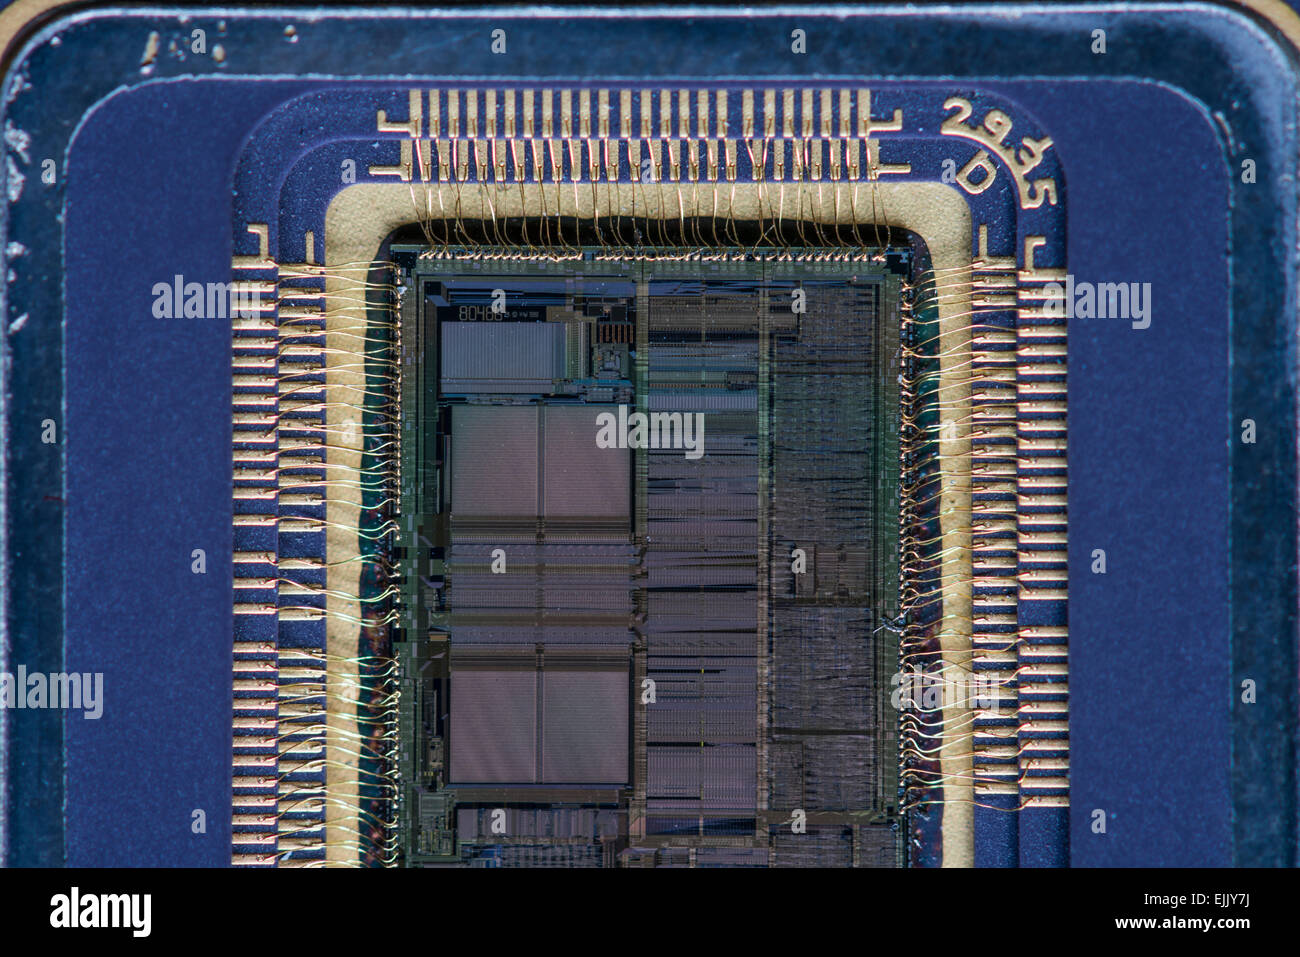 Nahaufnahme von einem geöffneten Intel 80486DX (i486) Mikroprozessor, eine der beliebtesten CPUs für PCs in den 90er Jahren. Stockfoto